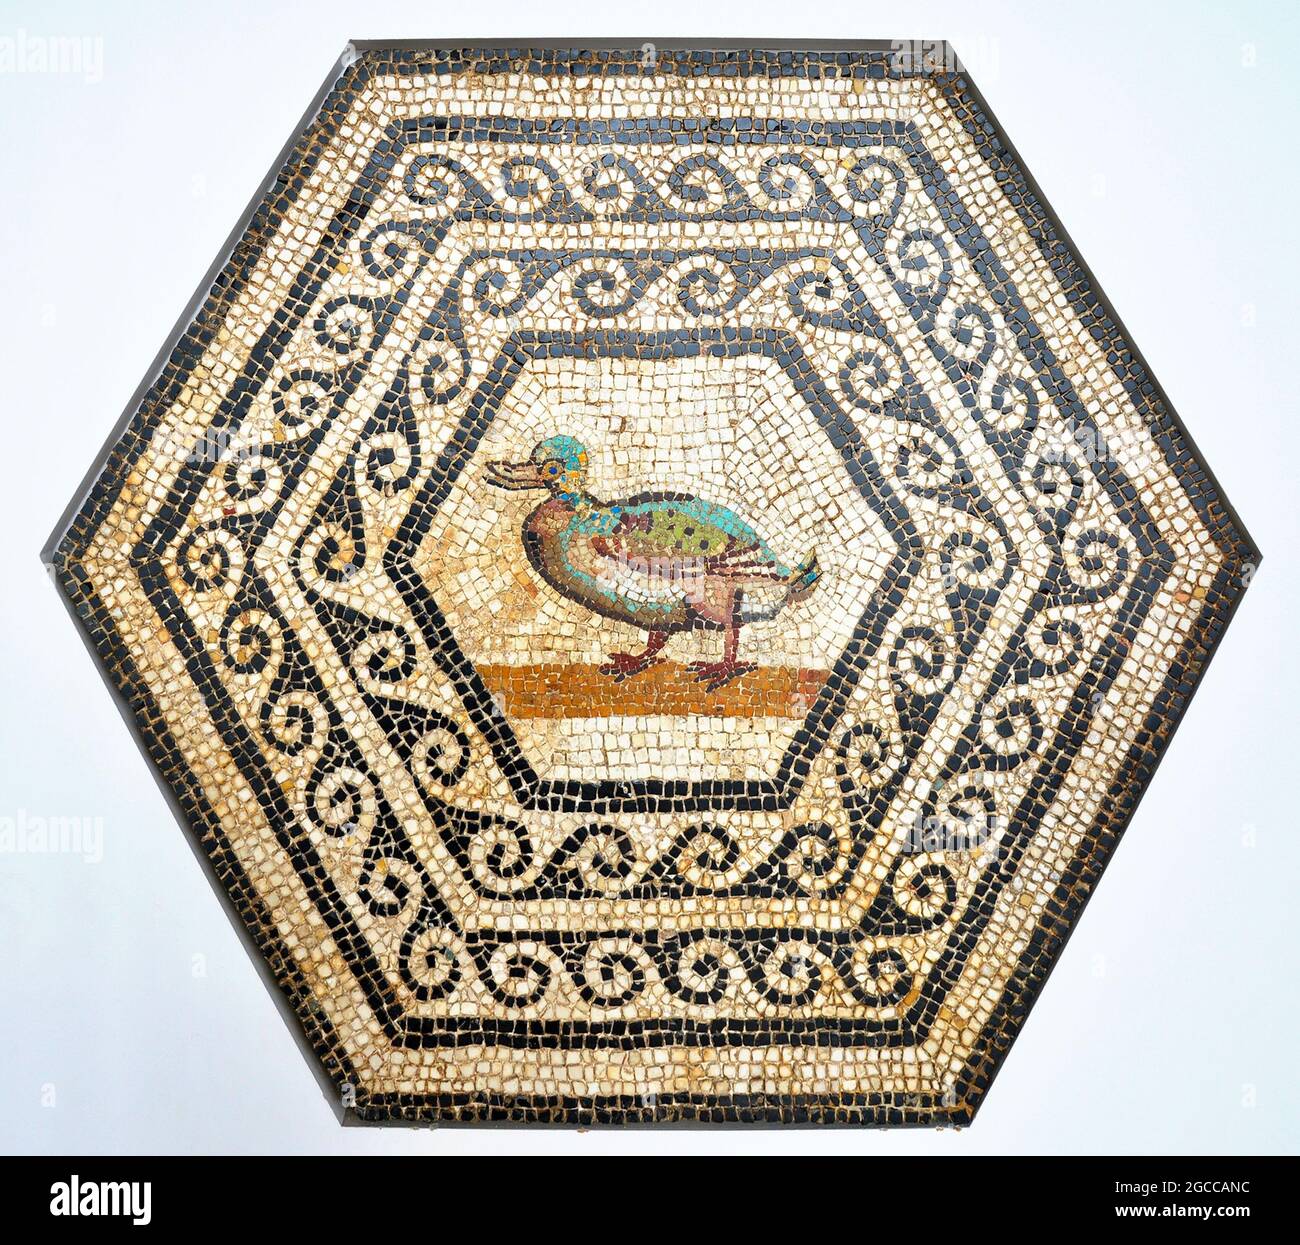 Mosaikkunst - Römisches Mosaik mit einer Ente, hergestellt aus Steinen und Glas, Ende des 2D. Jahrhunderts, in der Muse de Saint-Romain-en-Gal, Frankreich Stockfoto